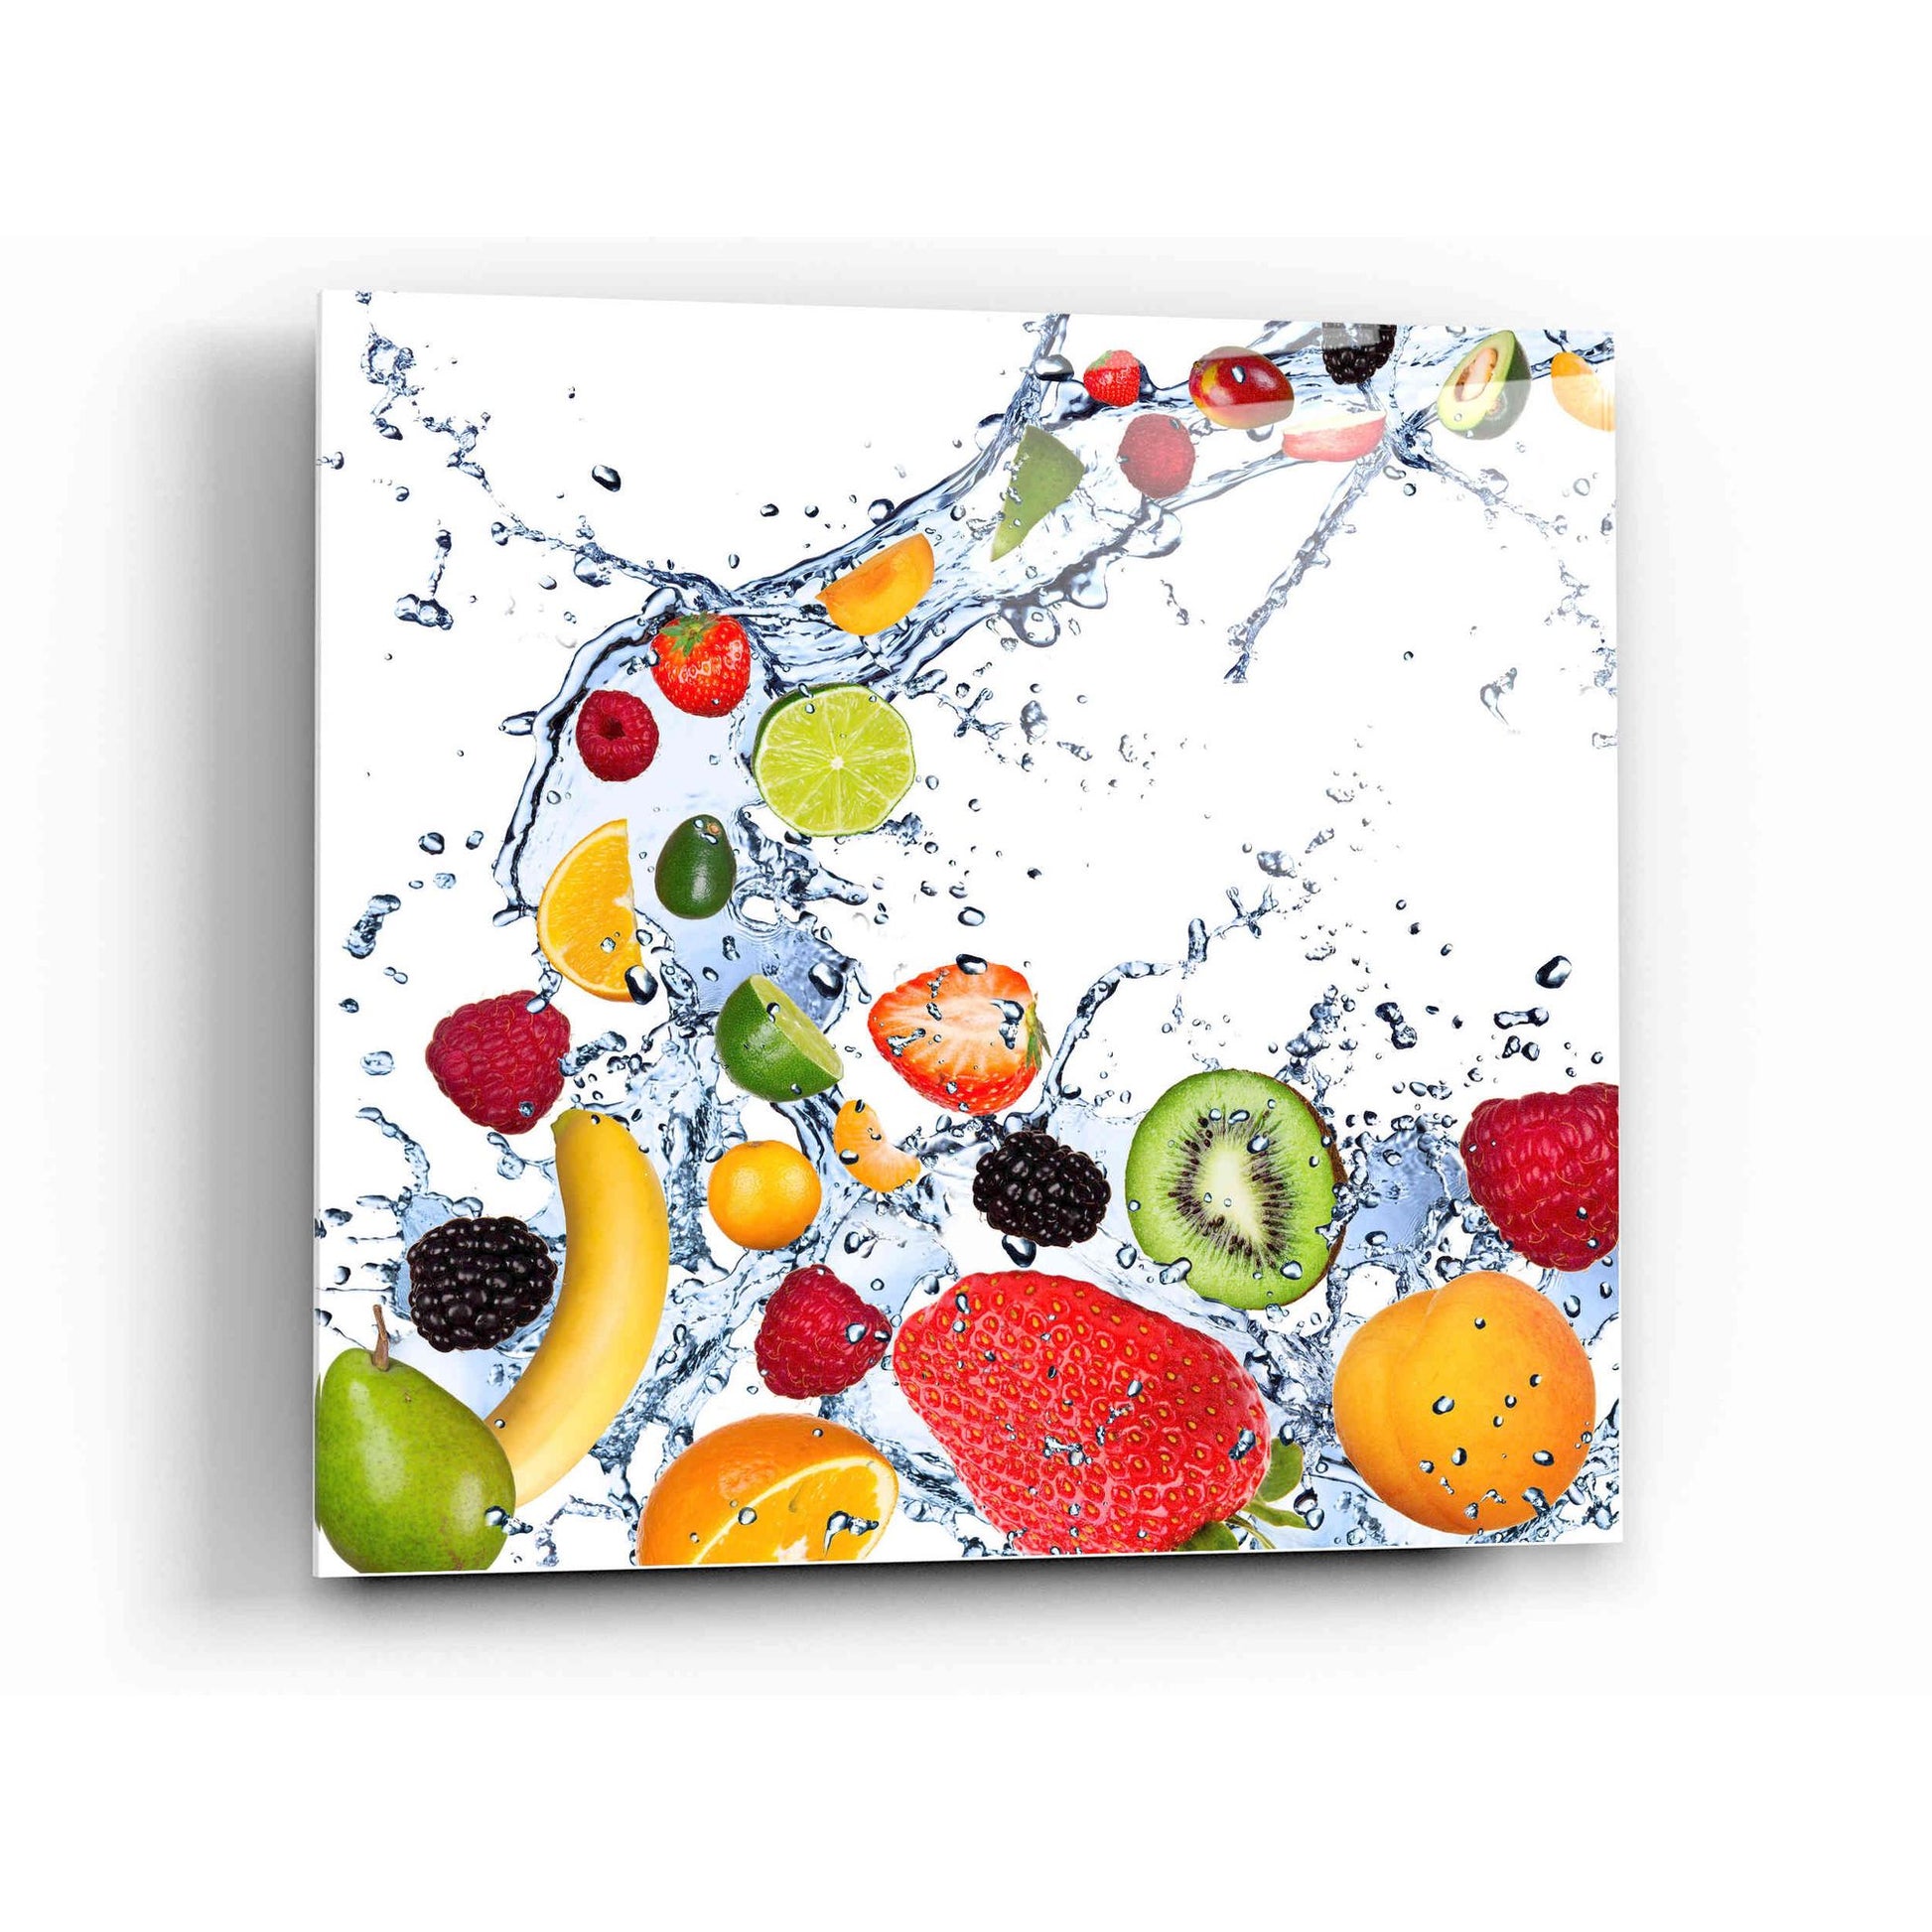 Epic Art "Fruit Splash II" Acrylic Glass Wall Art,12x12